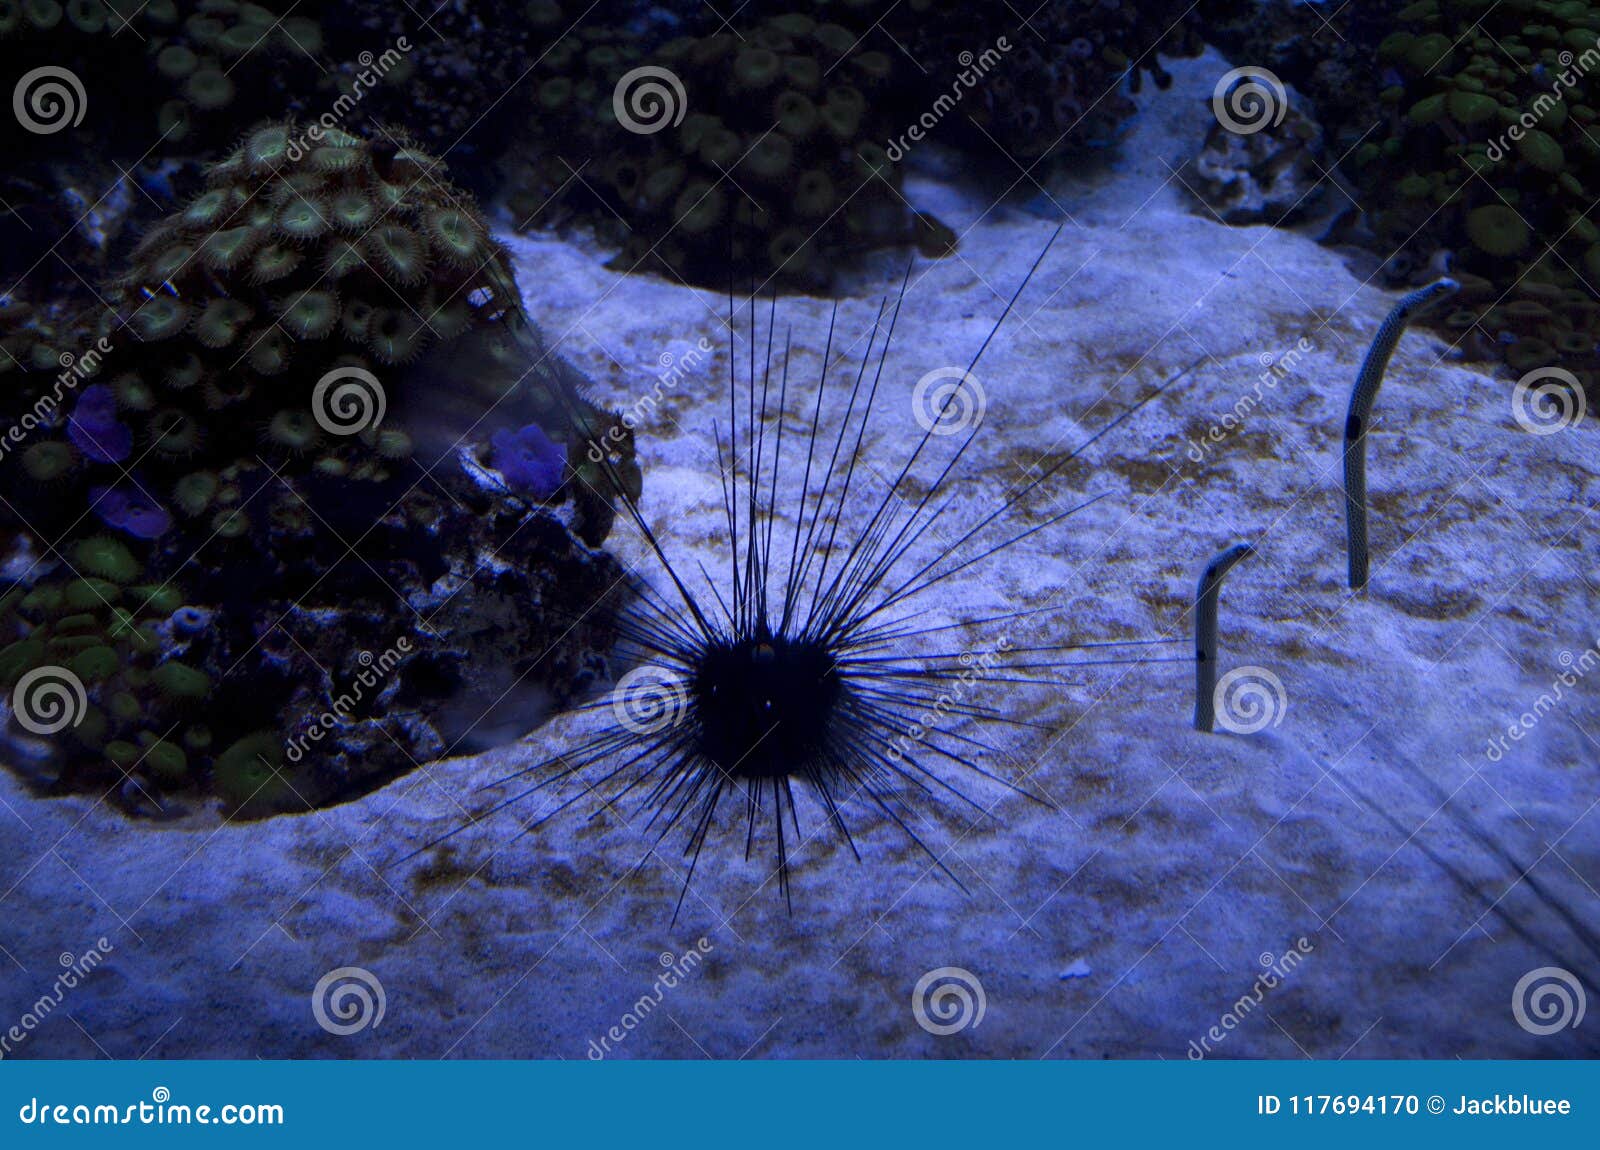 aquarium of sea warms and sea urchin